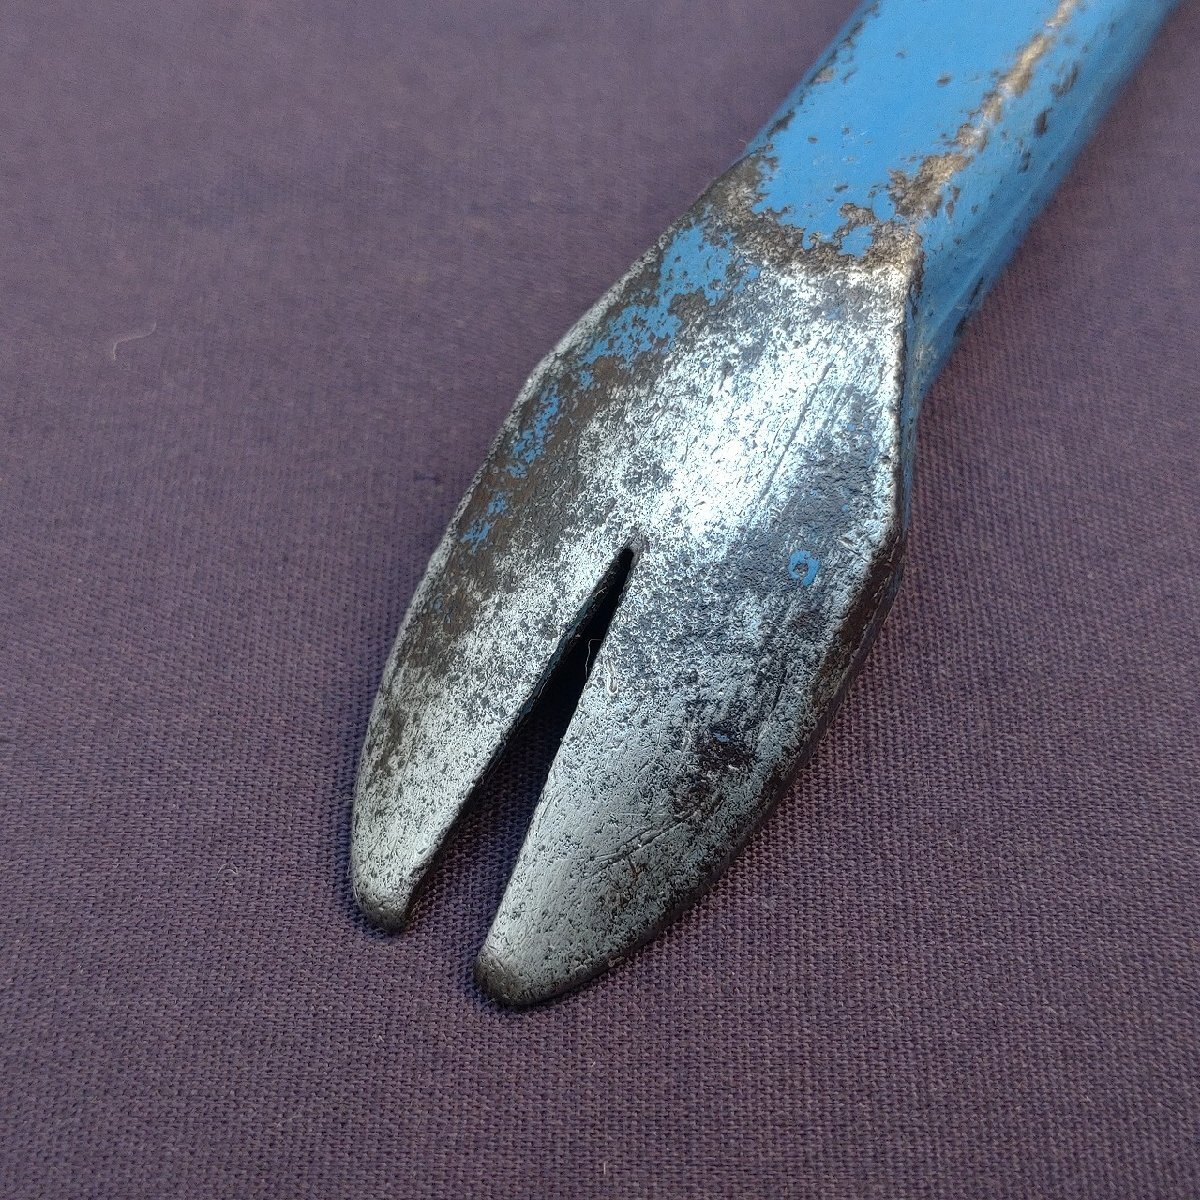  монтировка гвоздодер рычаг common ta300 масса примерно 470g плотничный инструмент инструмент сделано в Японии [9948]